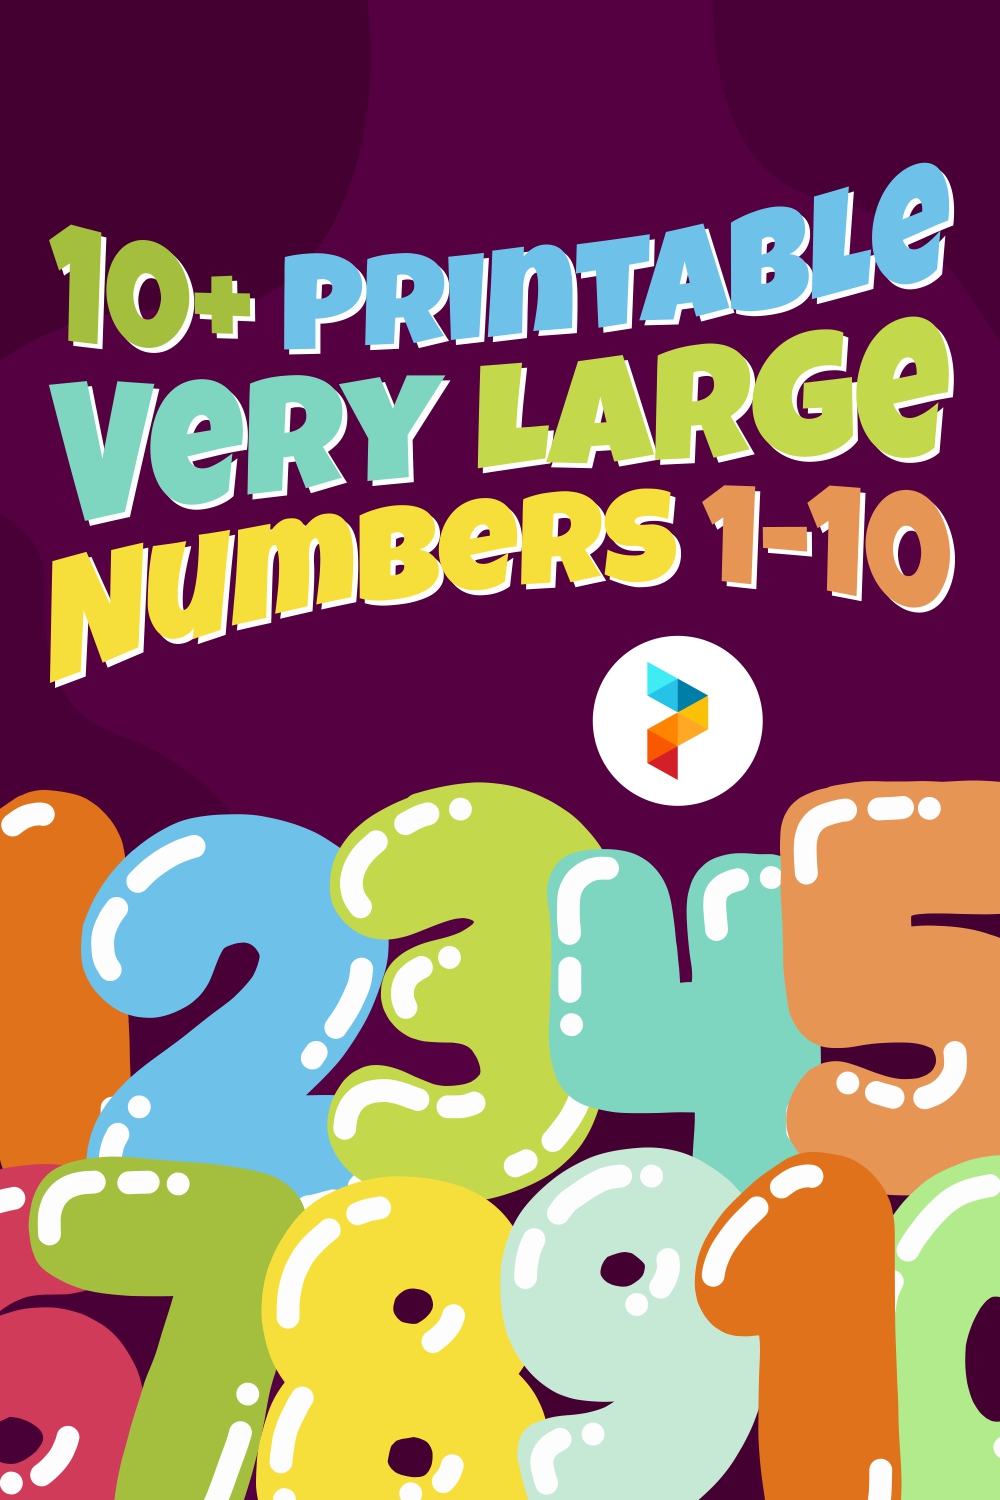 Printable Very Large Numbers 1 10